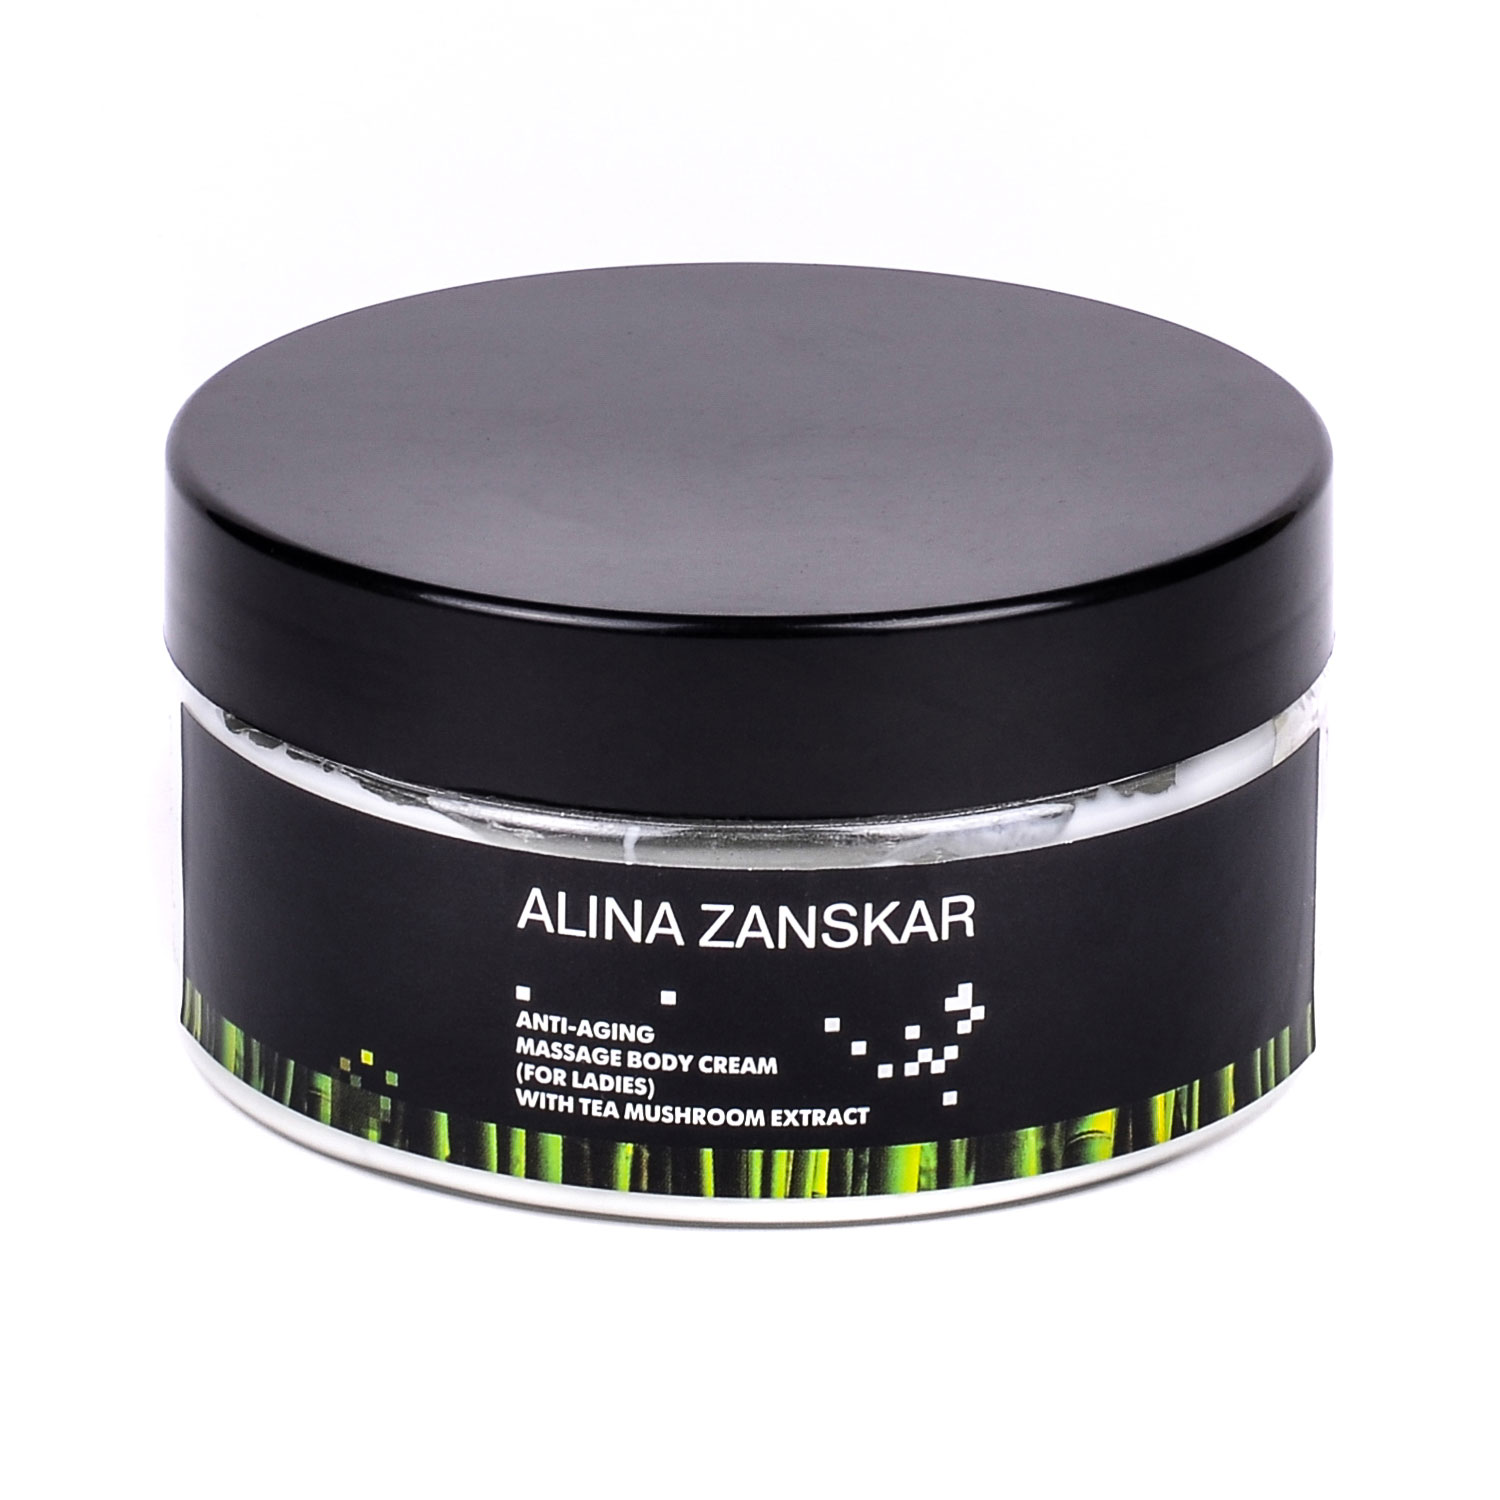 Омолаживающий массажный крем для тела (для женщин) с экстрактом чайного гриба Alina Zanskar в интернет магазине косметики на официальном сайте